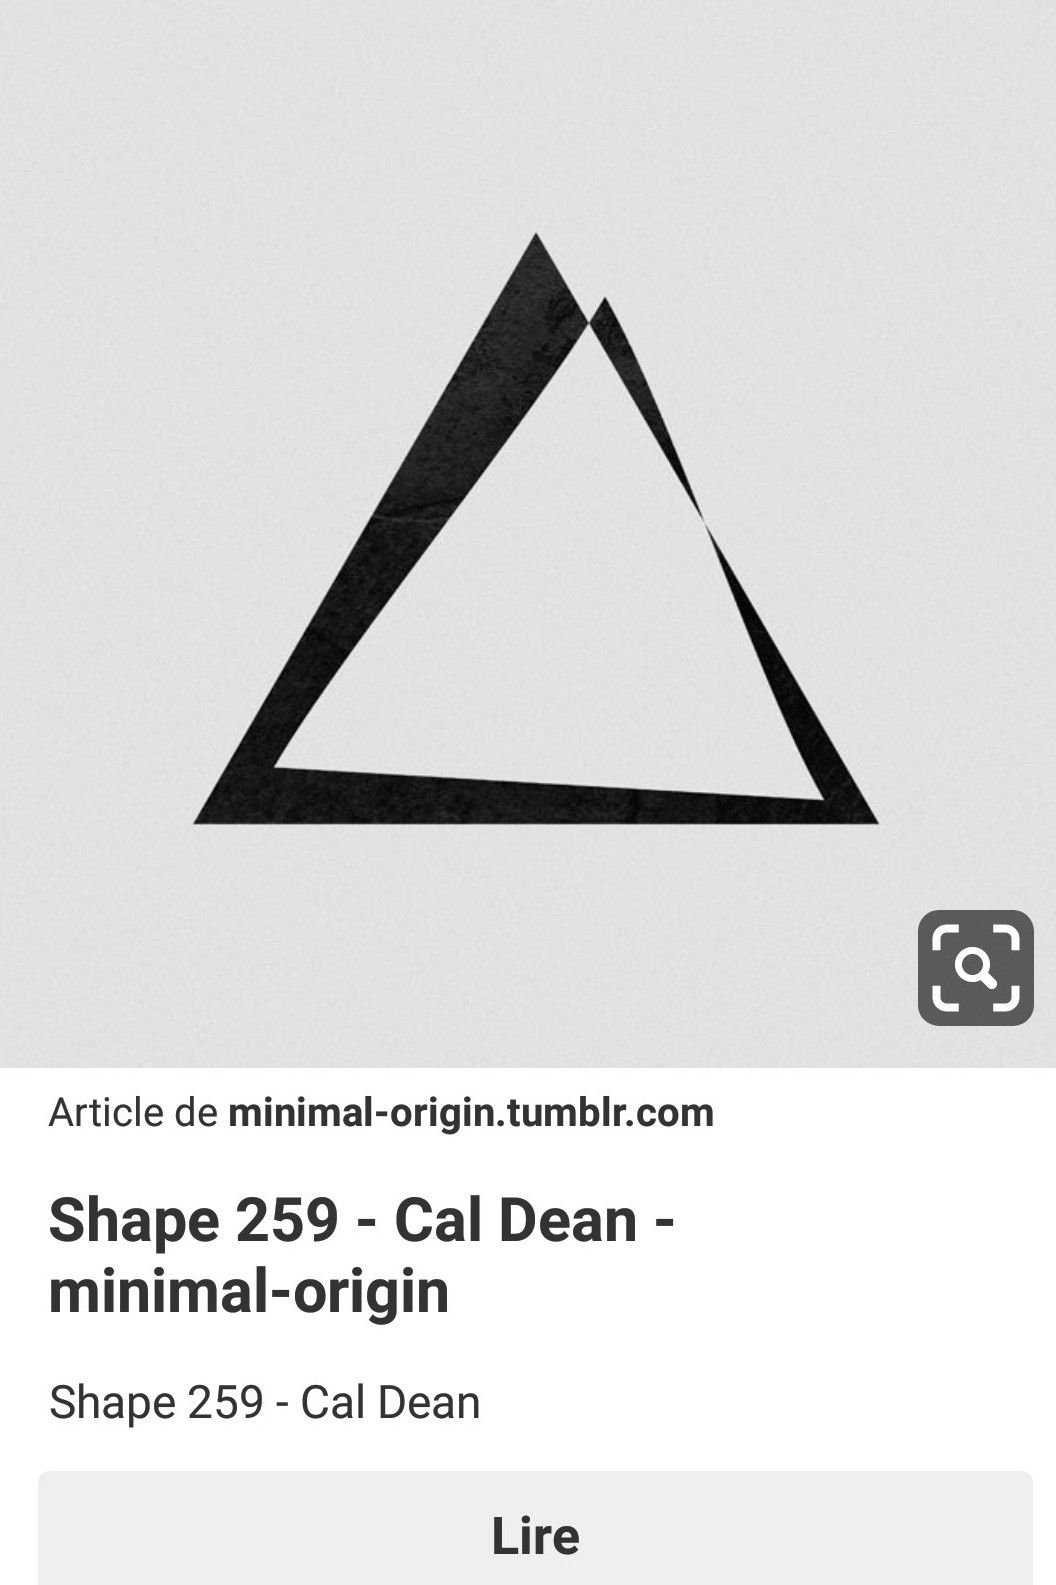 Треугольник символ